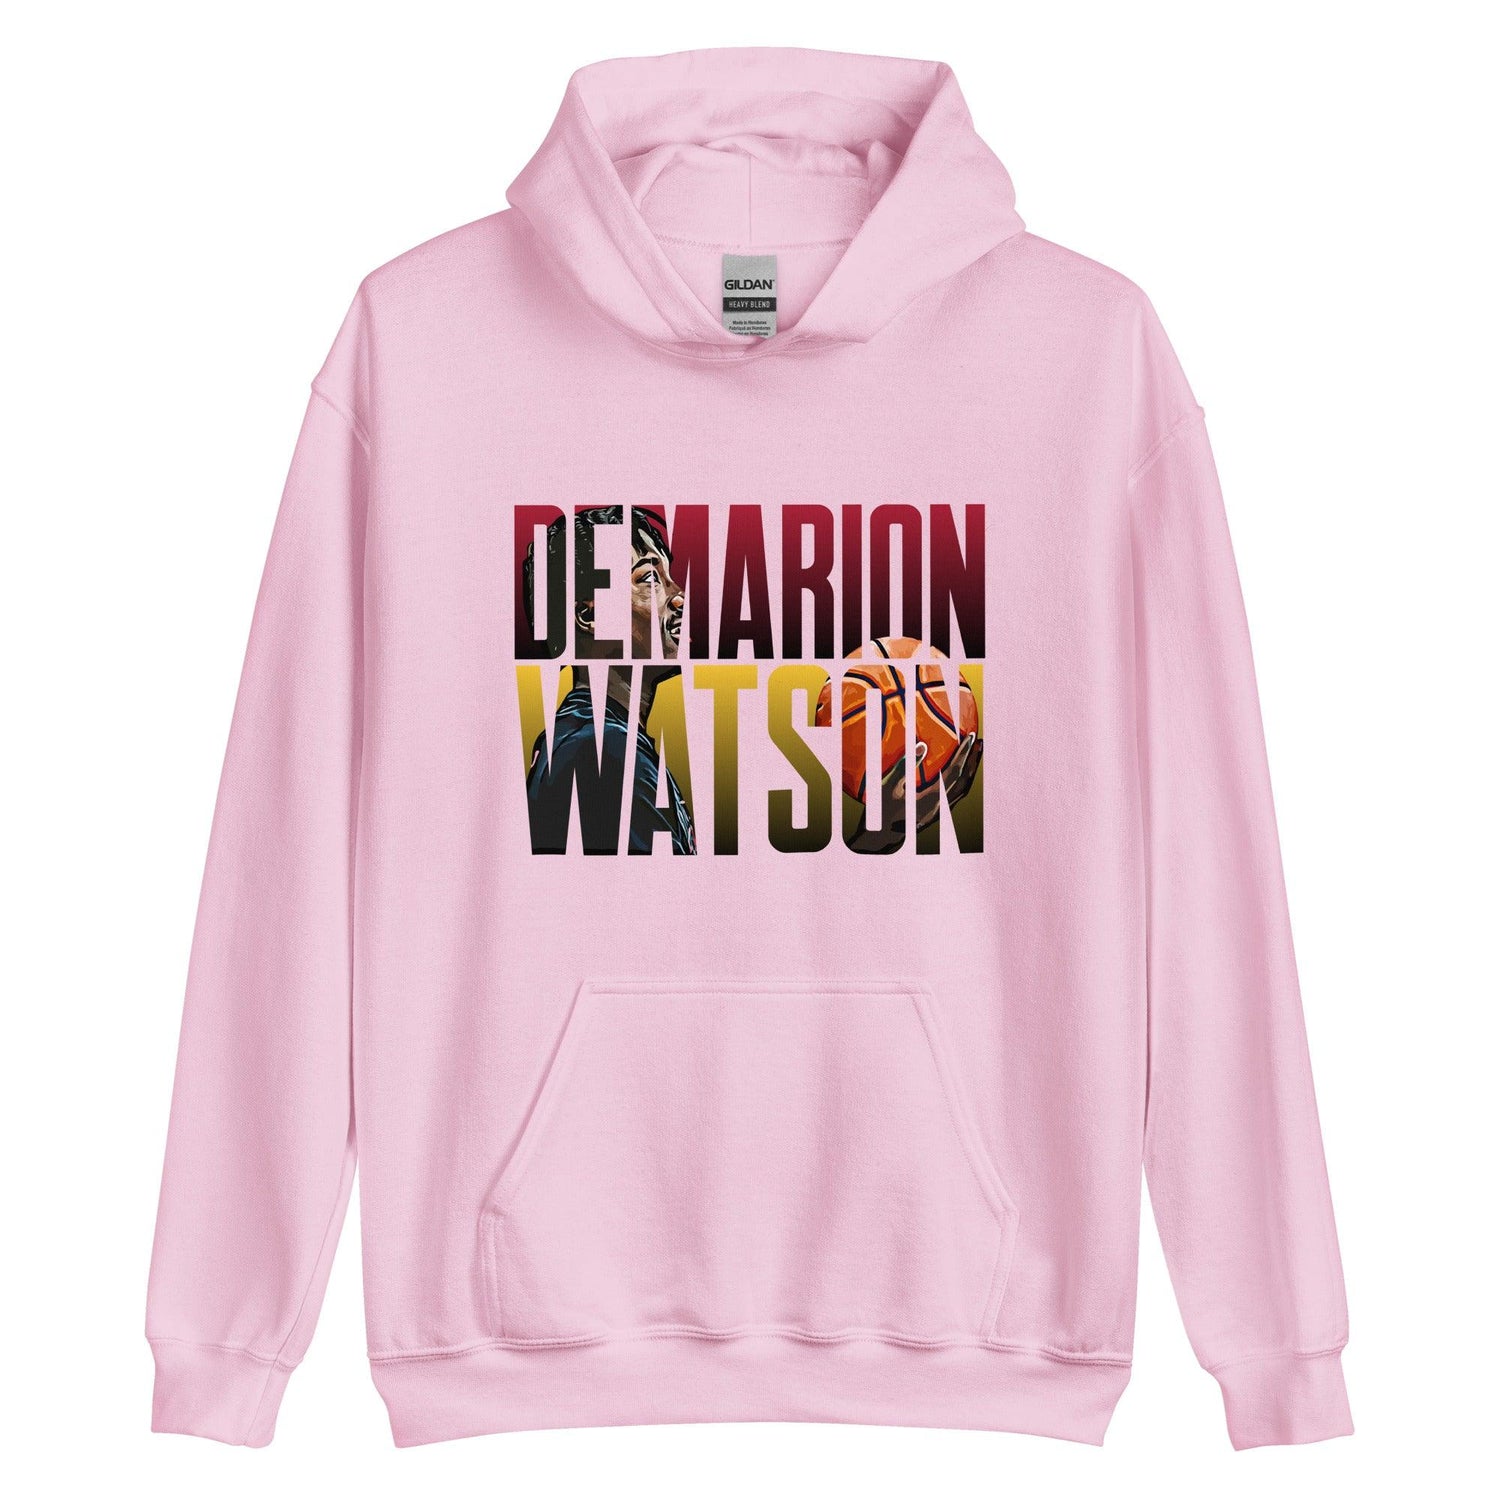 Demarion Watson "Future Star" Hoodie - Fan Arch